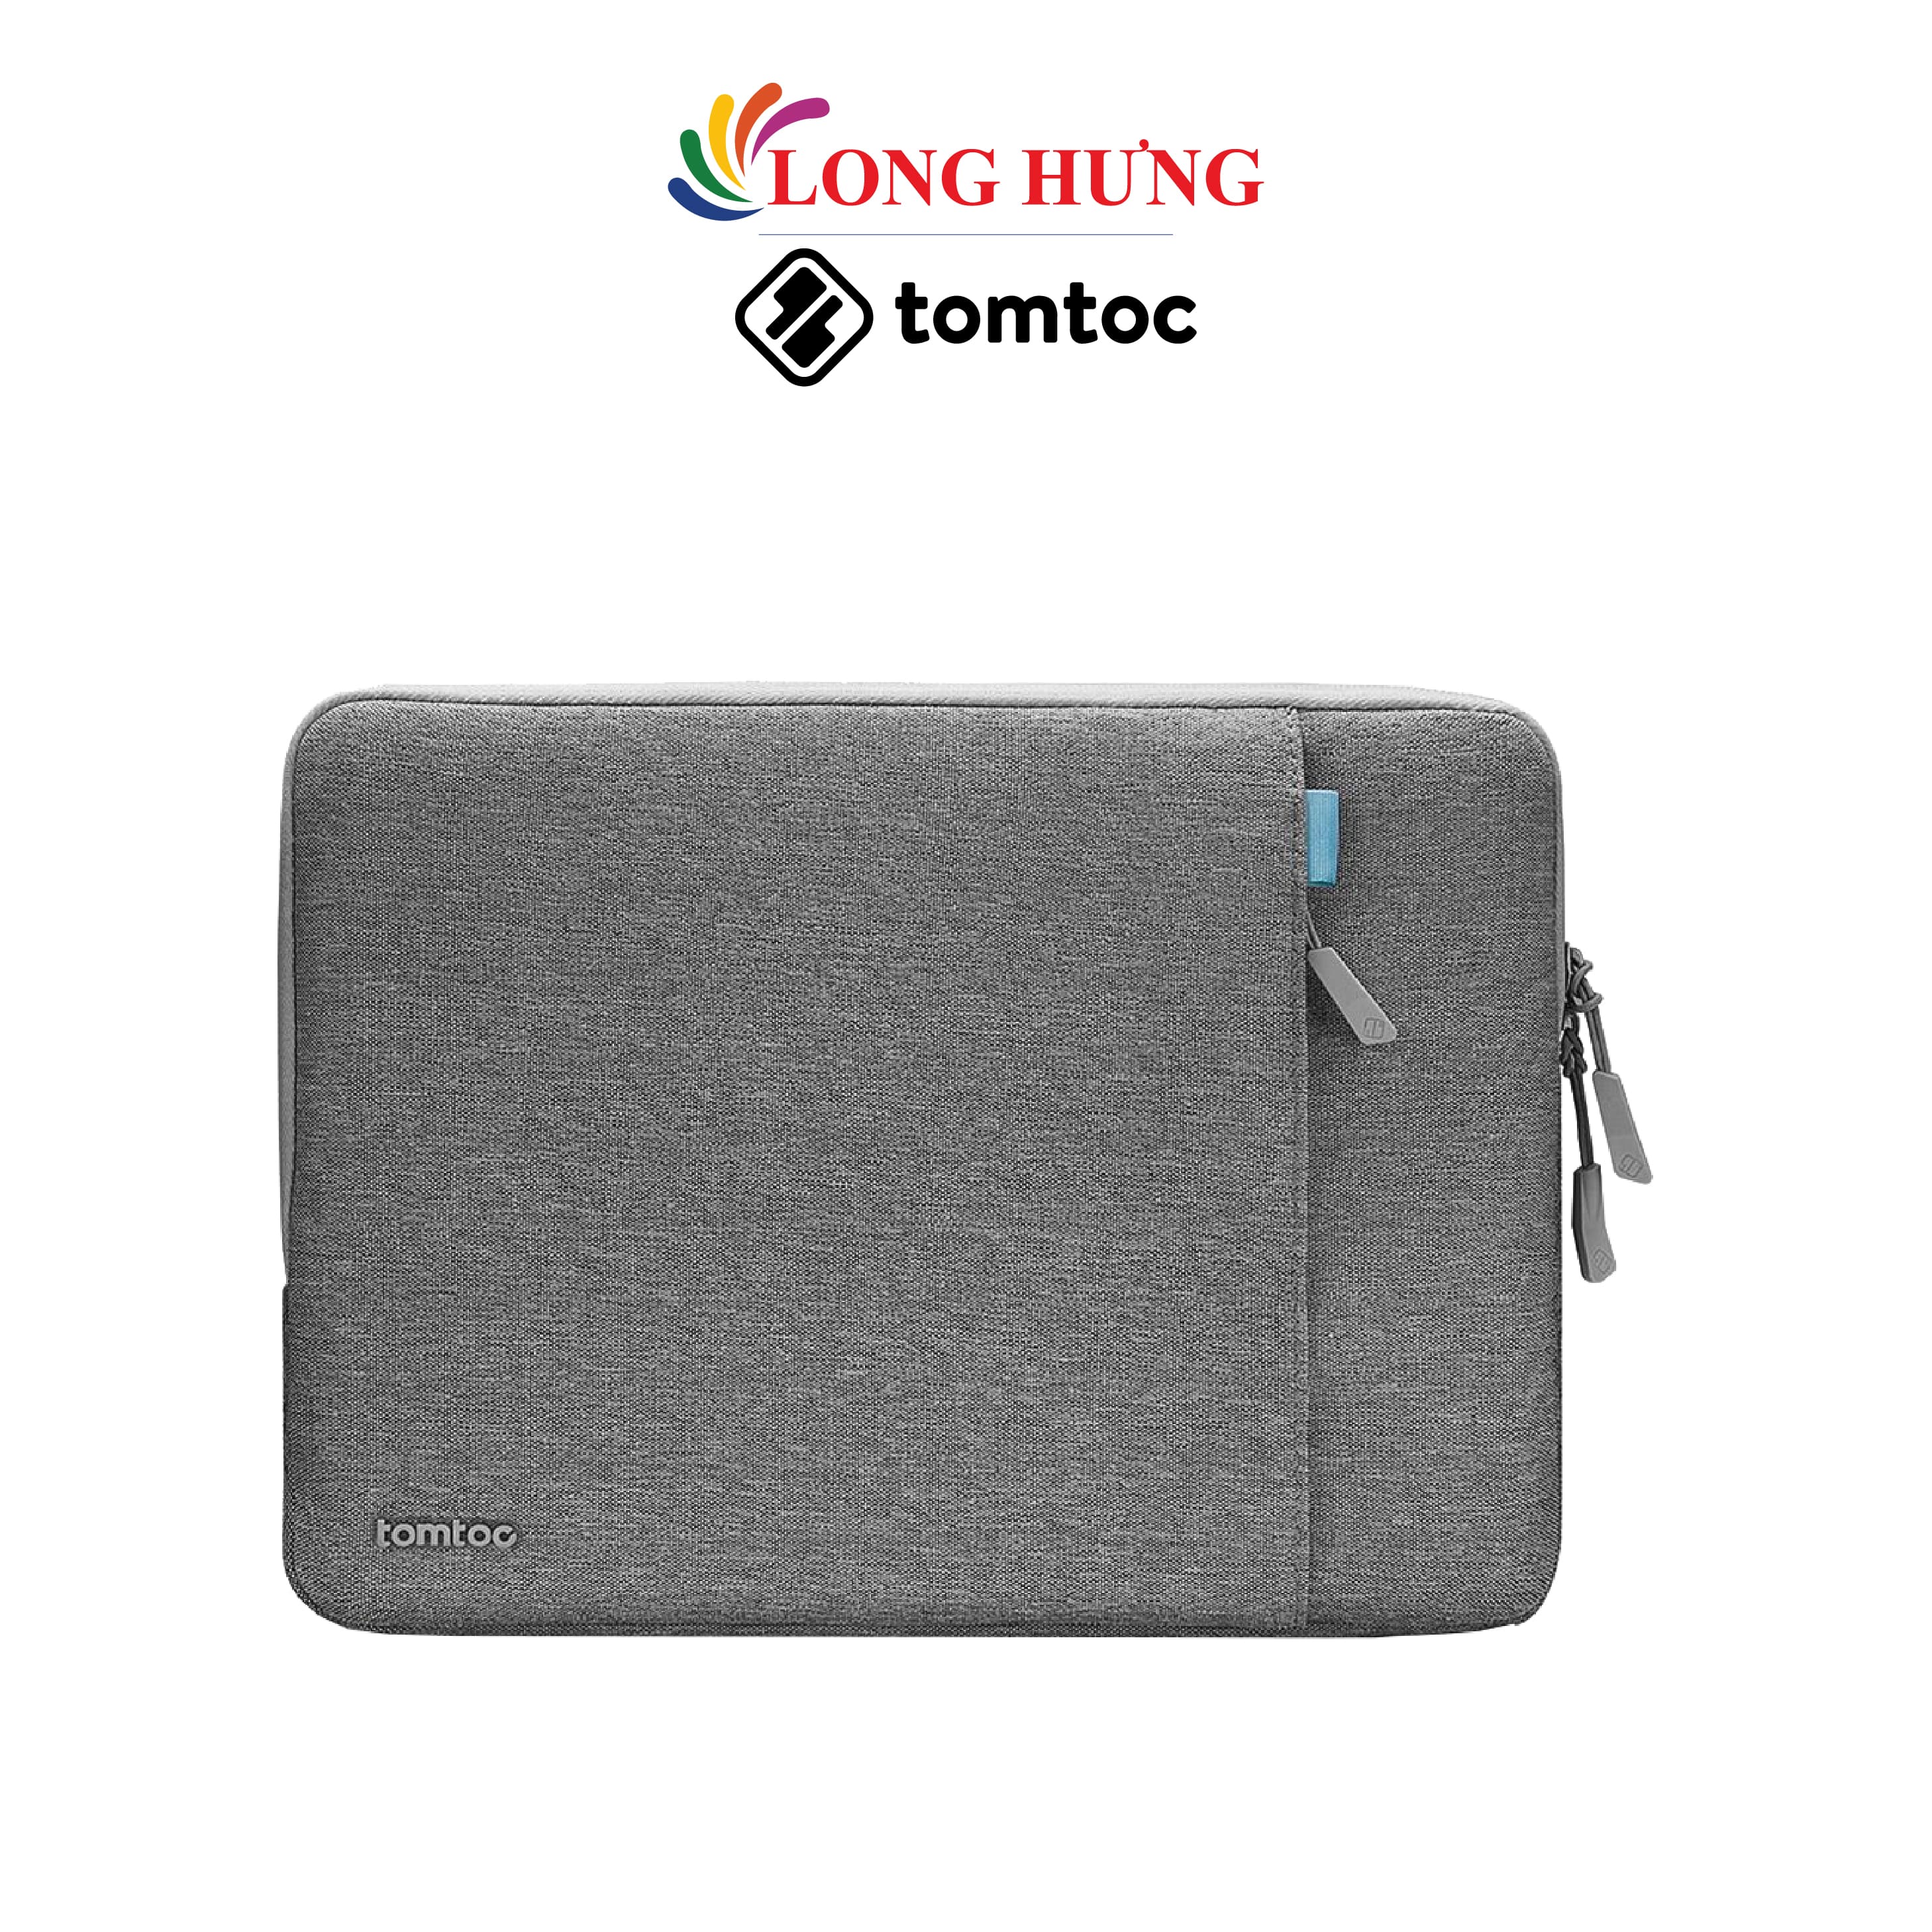 Túi chống sốc Tomtoc Versatile-A13 Protective Laptop Sleeve Mbook Pro 16 inch A13-E01 - Hàng chính hãng